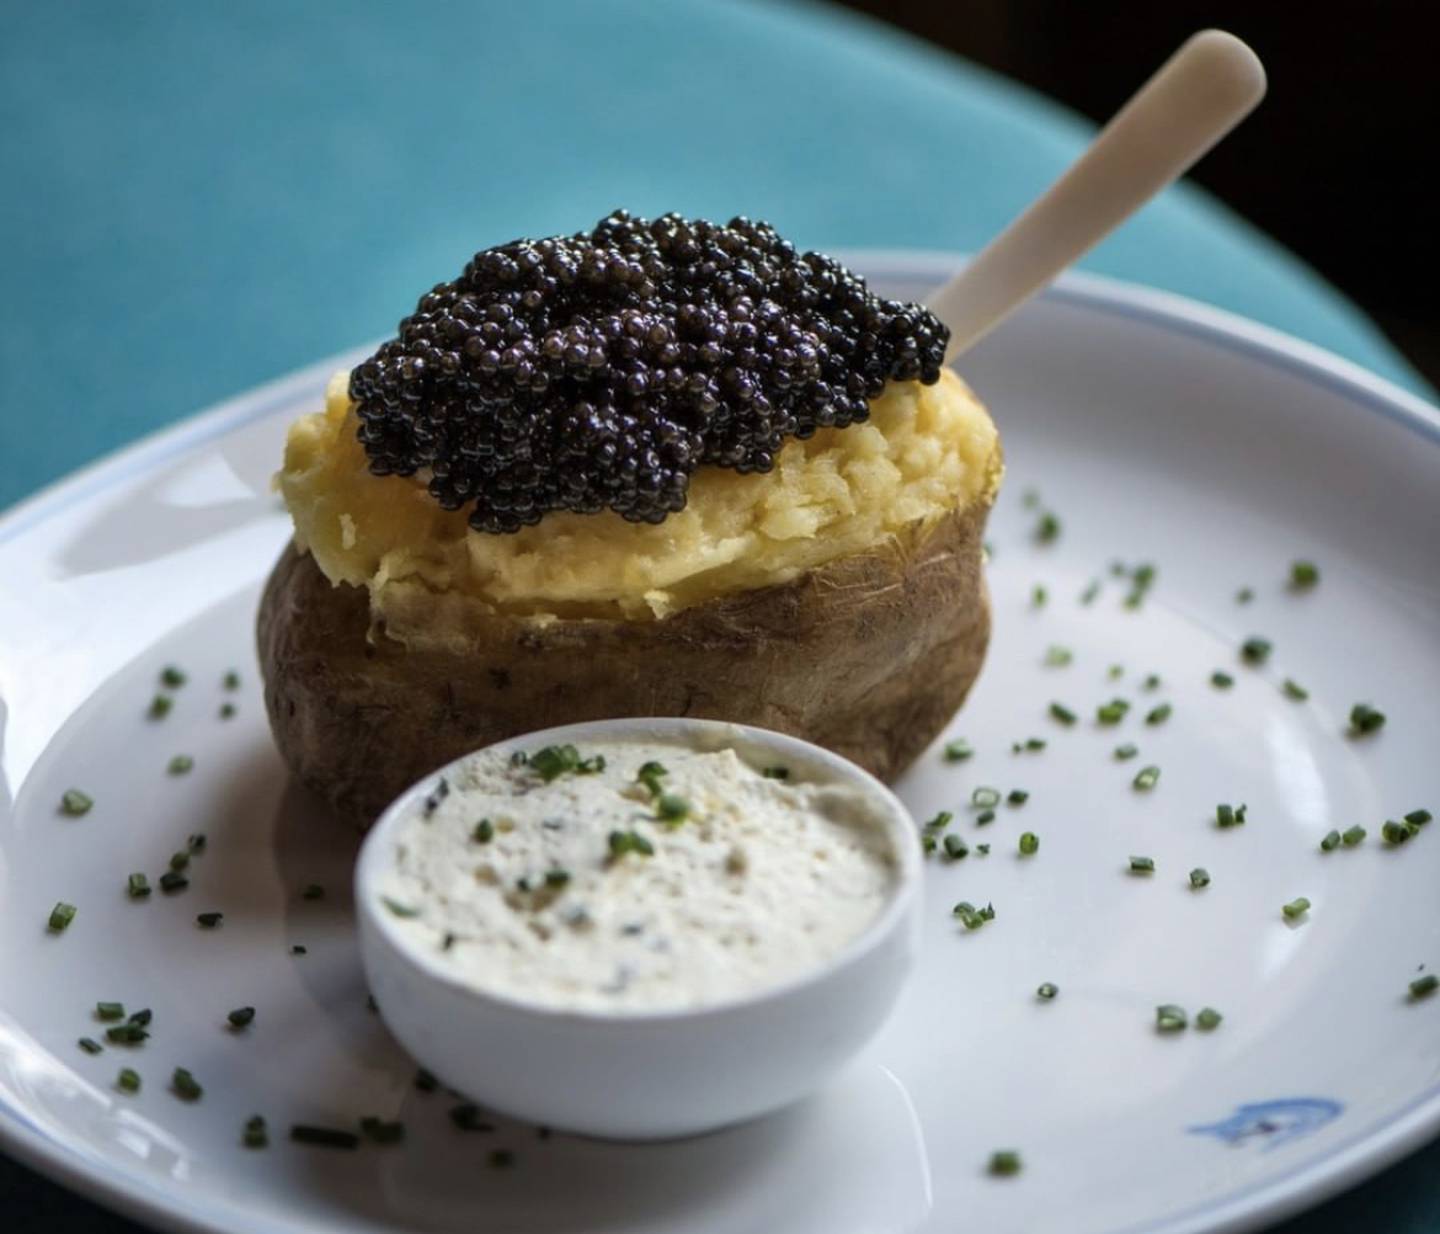 The Kaspia baked potato with caviar. Photo: Caviar Kaspia